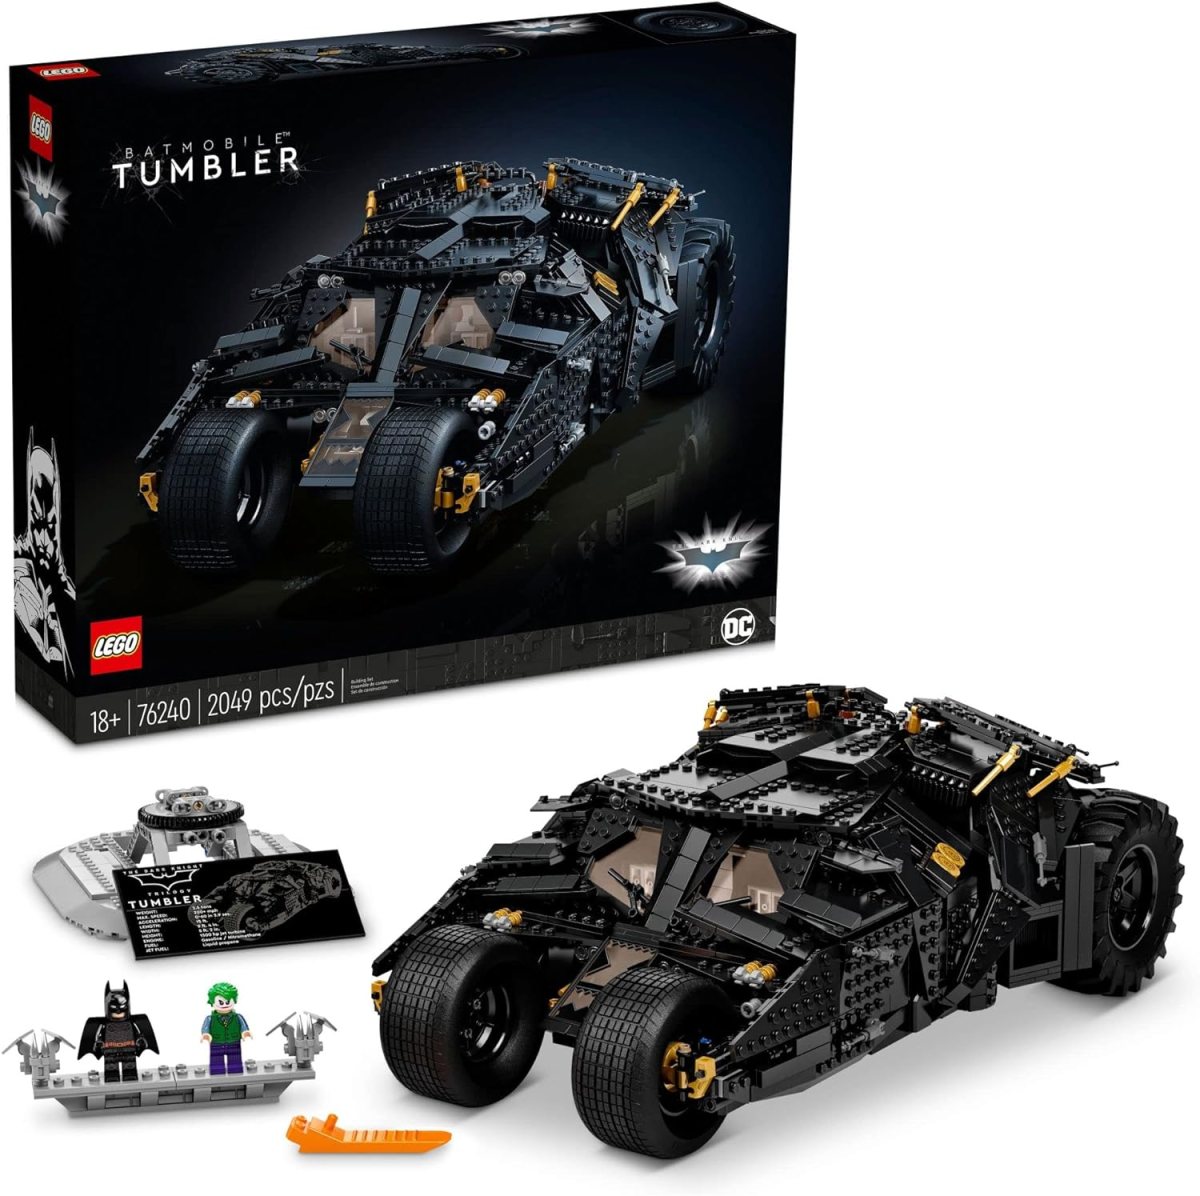 Batman Begins "Tumbler" Batmobile LEGO set.